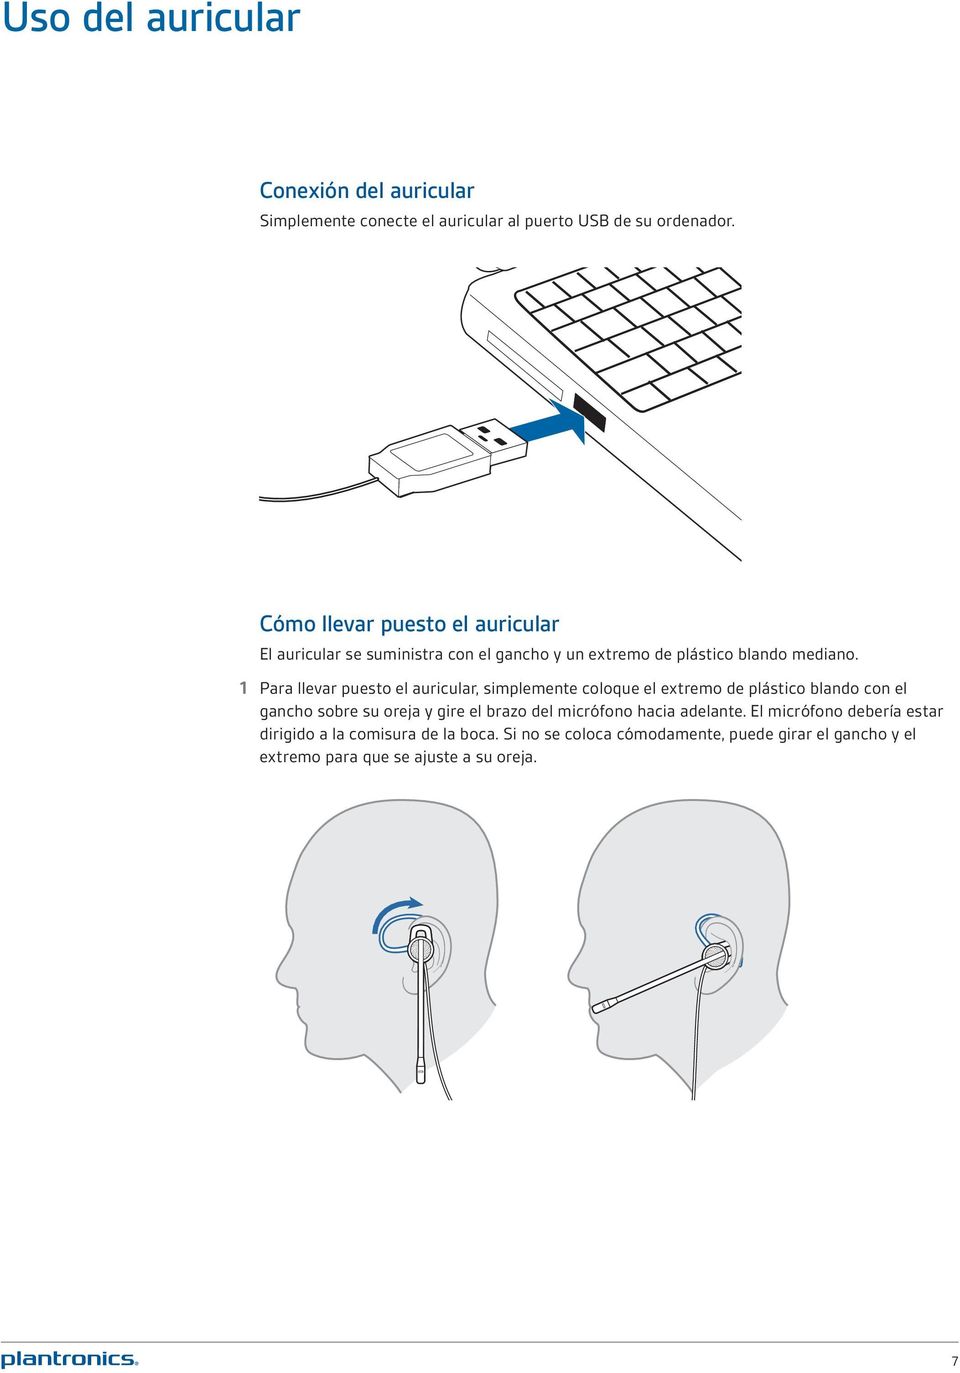 1 Para llevar puesto el auricular, simplemente coloque el extremo de plástico blando con el gancho sobre su oreja y gire el brazo del